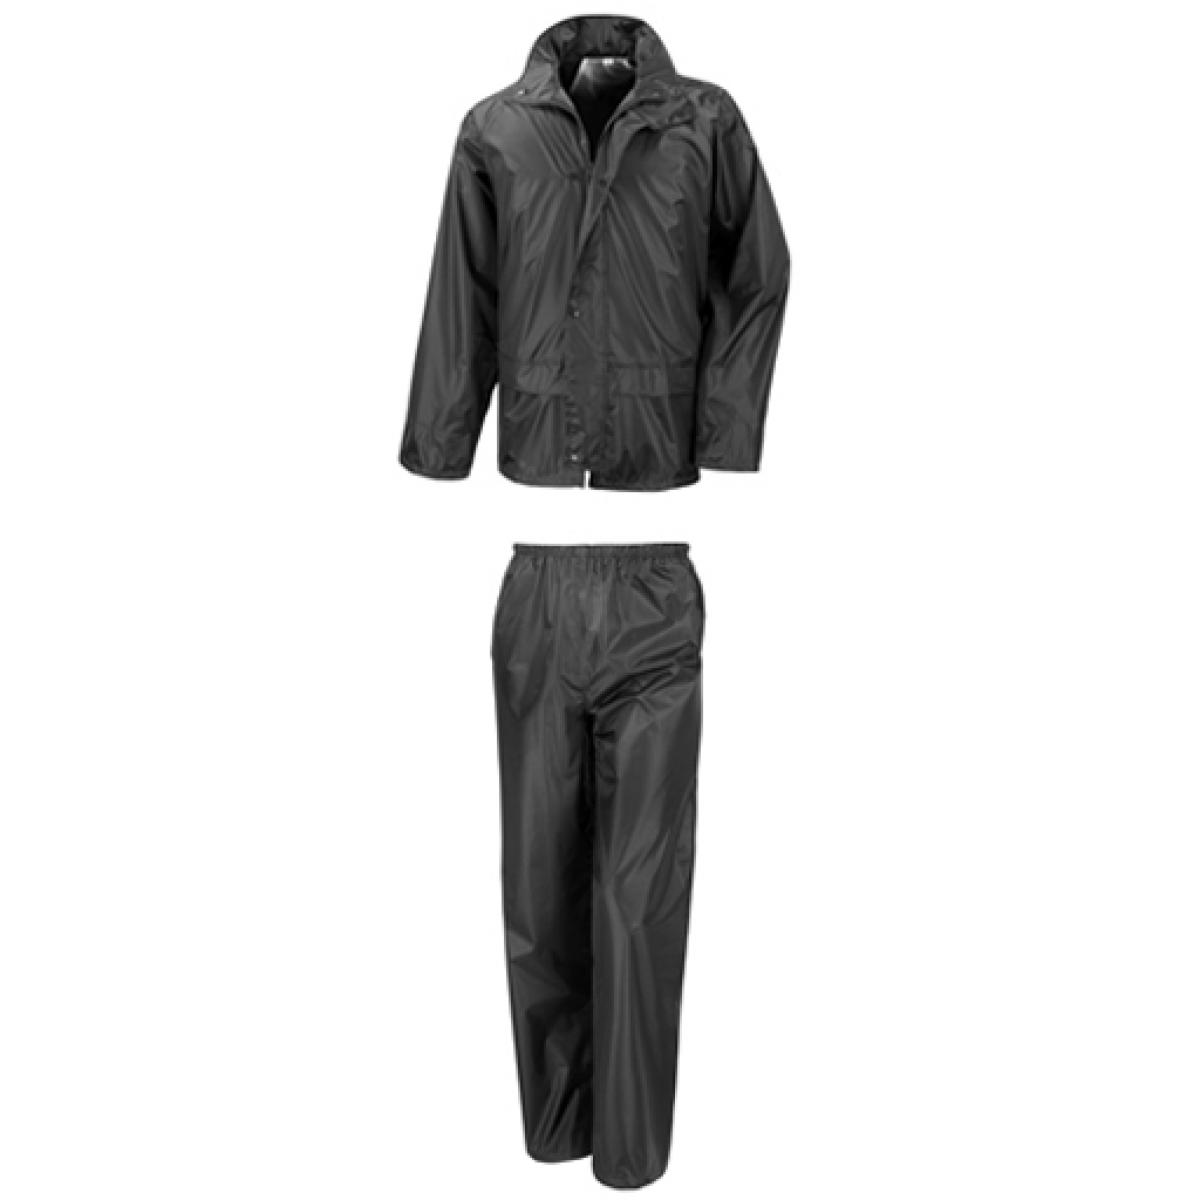 Hersteller: Result Core Herstellernummer: R225X Artikelbezeichnung: Rain Suit Farbe: Black